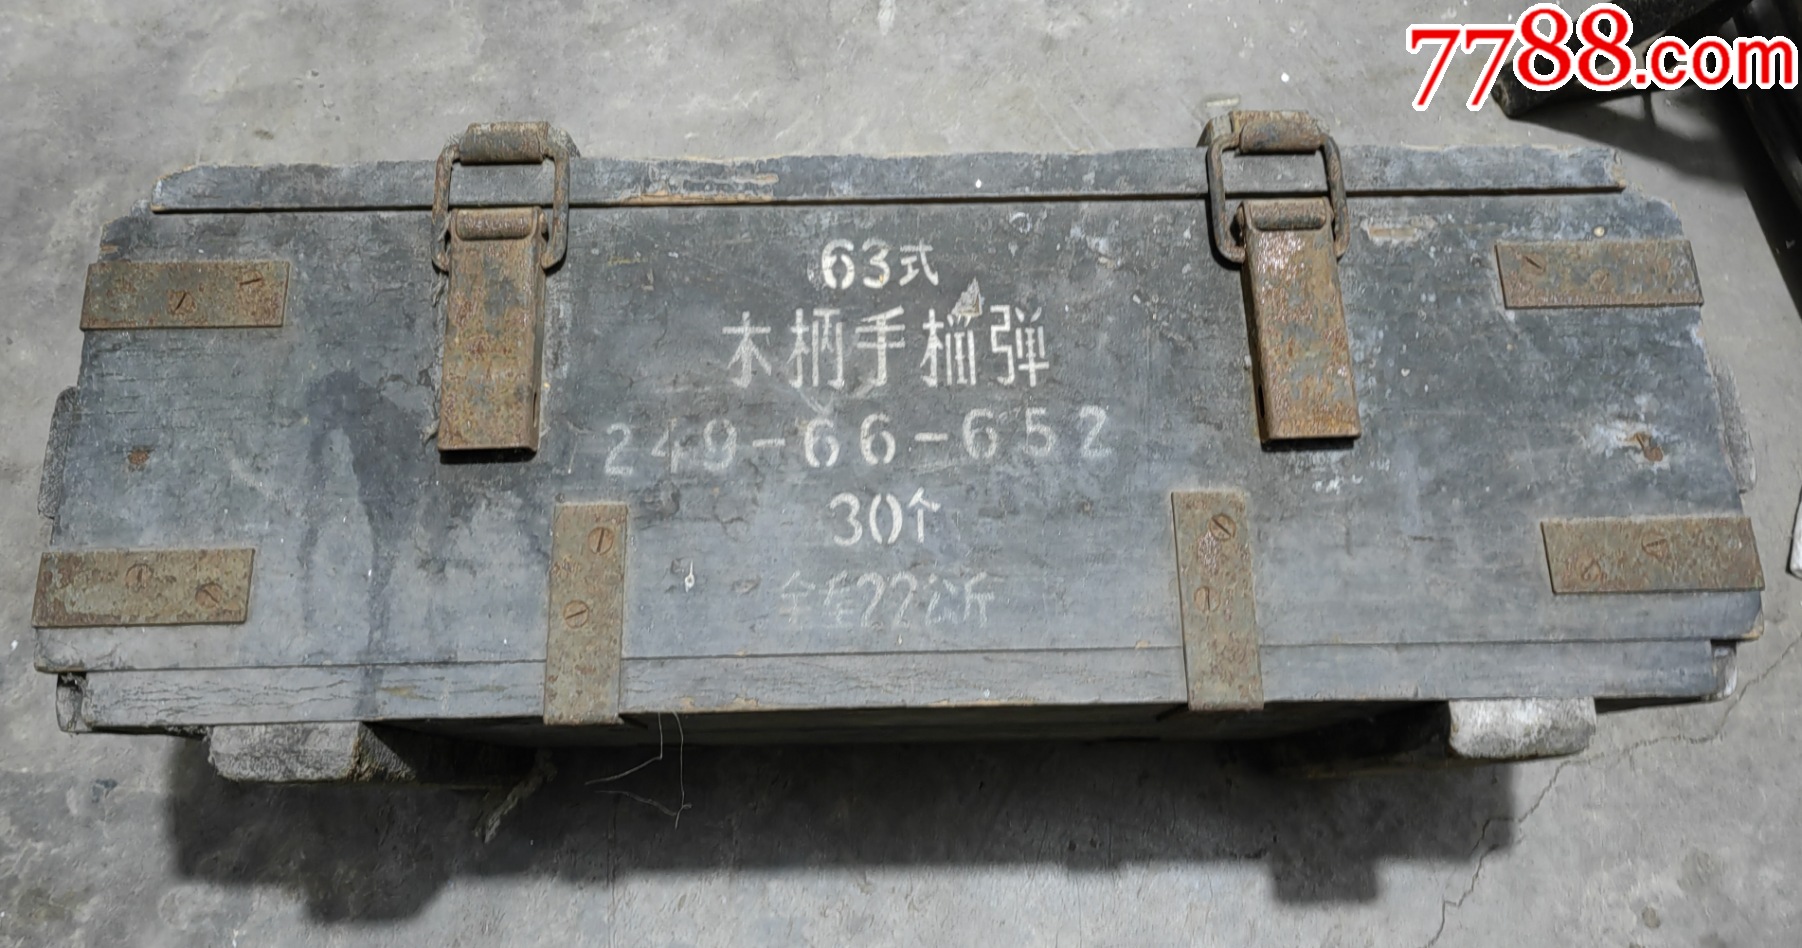 少见的中国自行研制的第一代63式木柄手榴弹弹箱